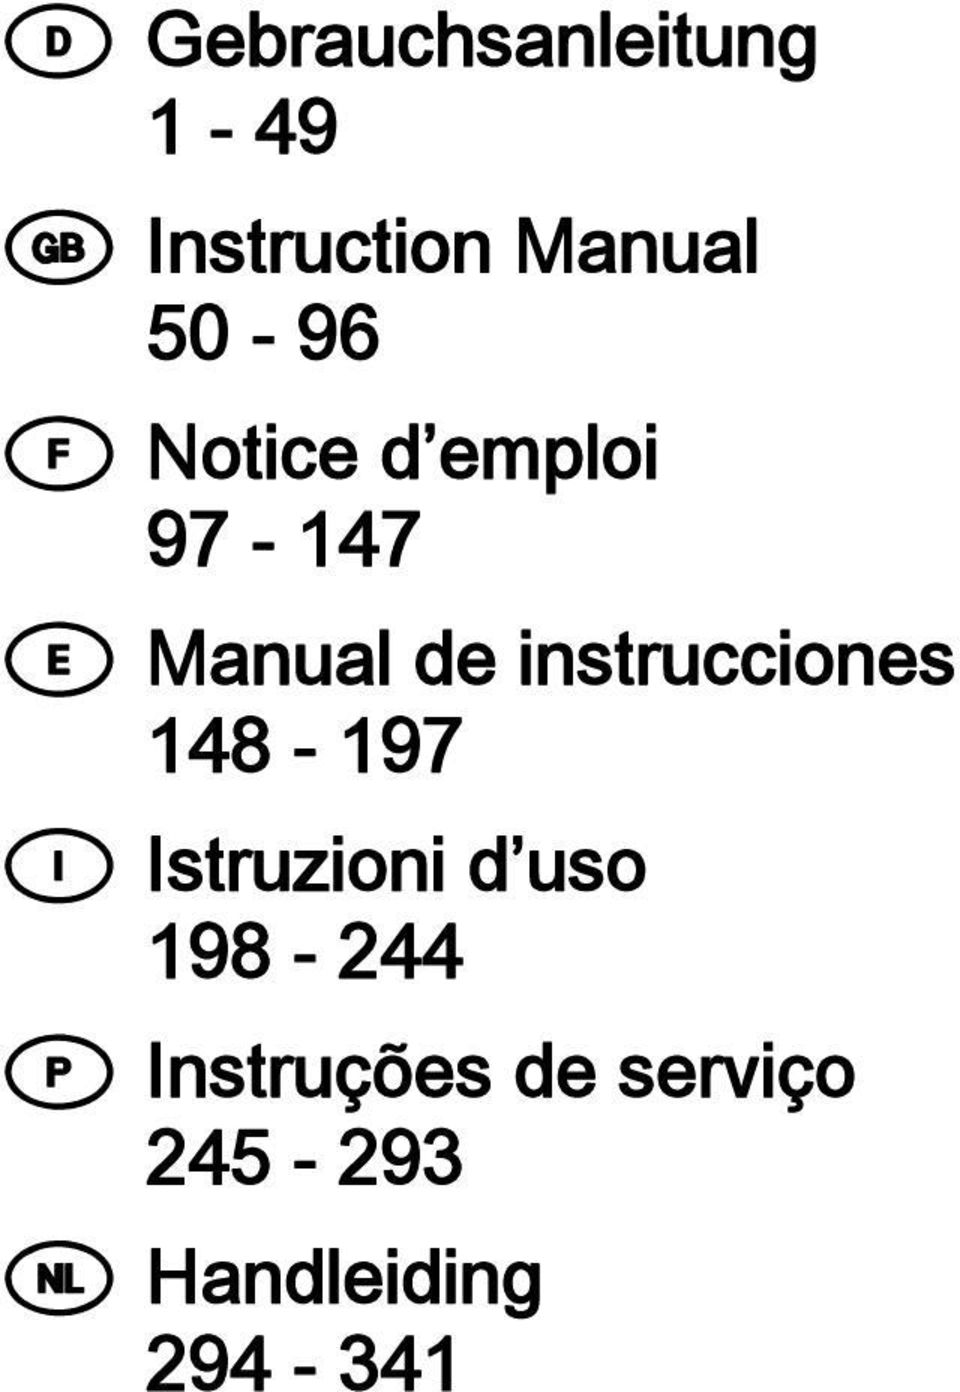 instrucciones 48-97 I Istruzioni d uso 98-244